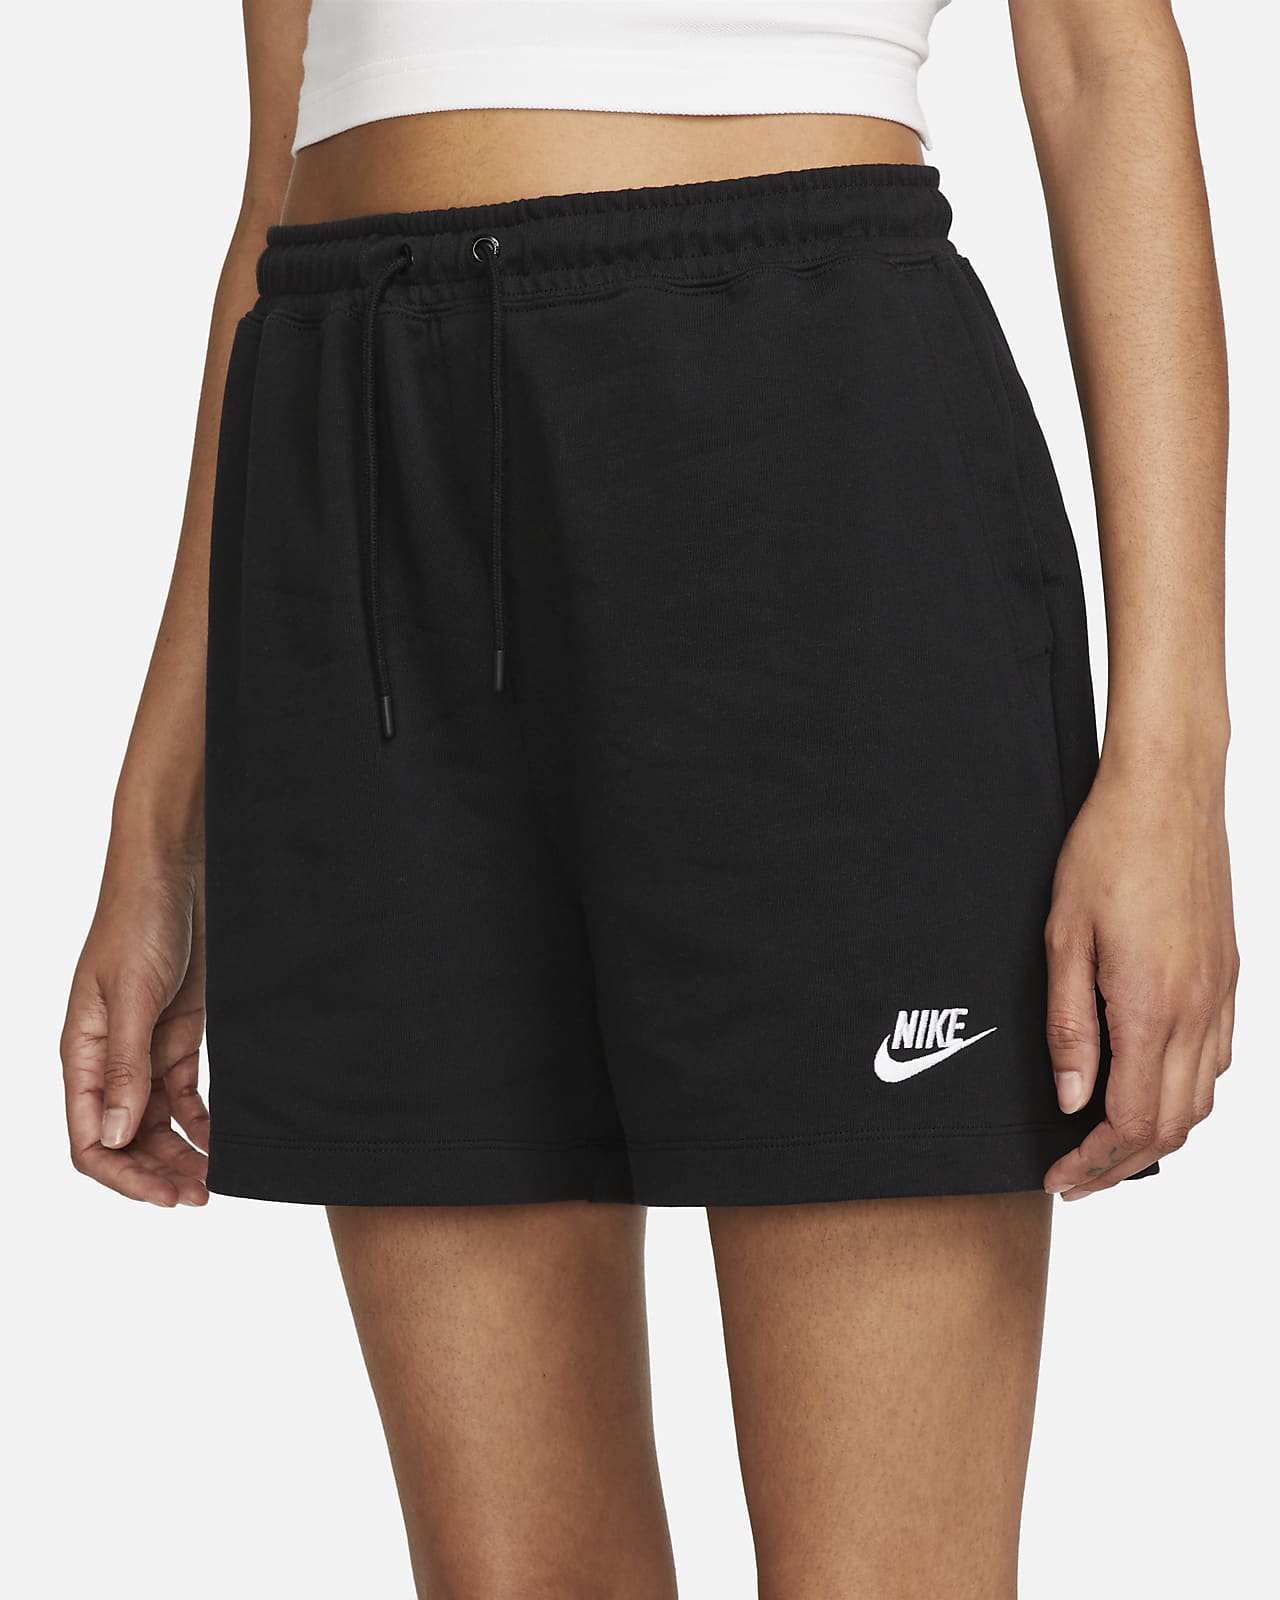 nike women's jersey shorts